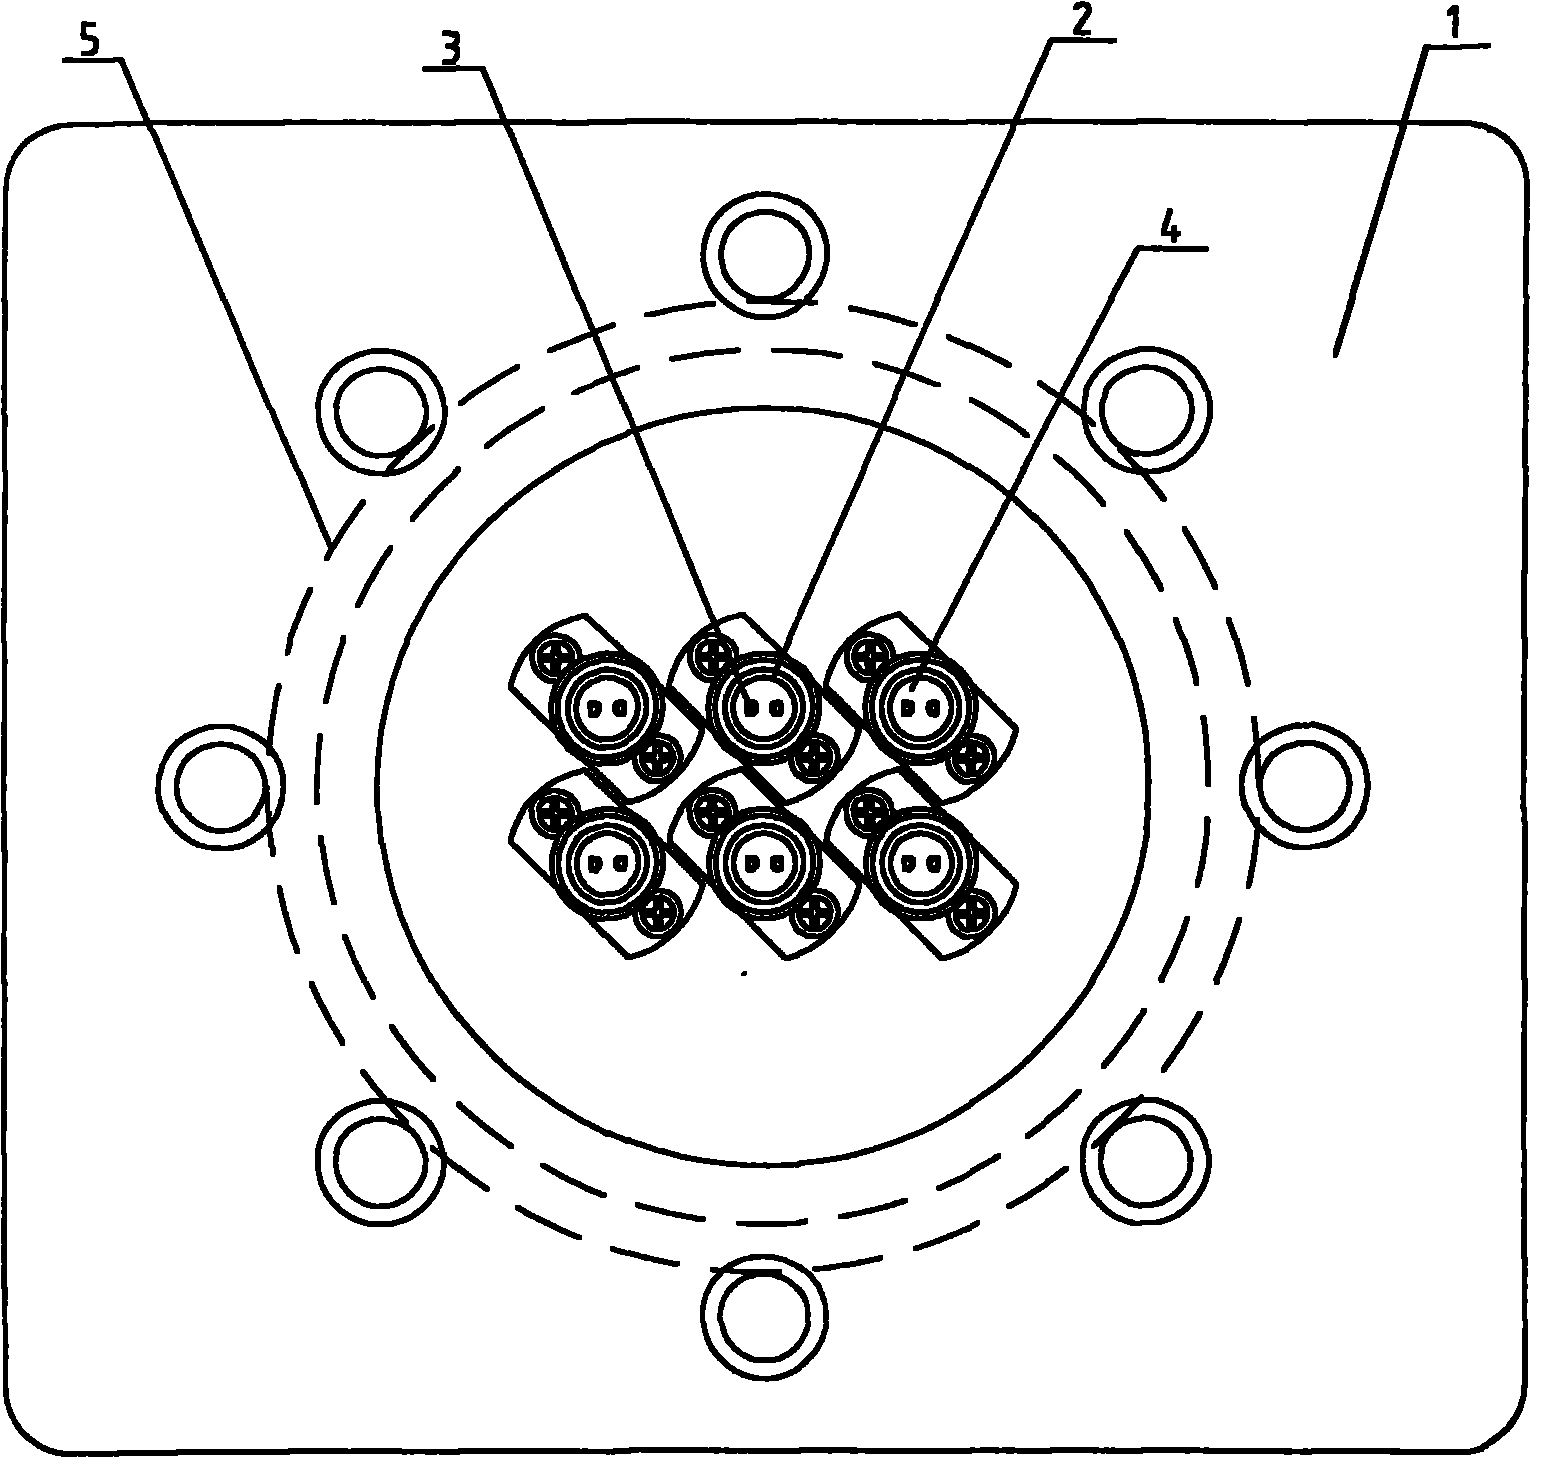 Metal sealing terminal plate